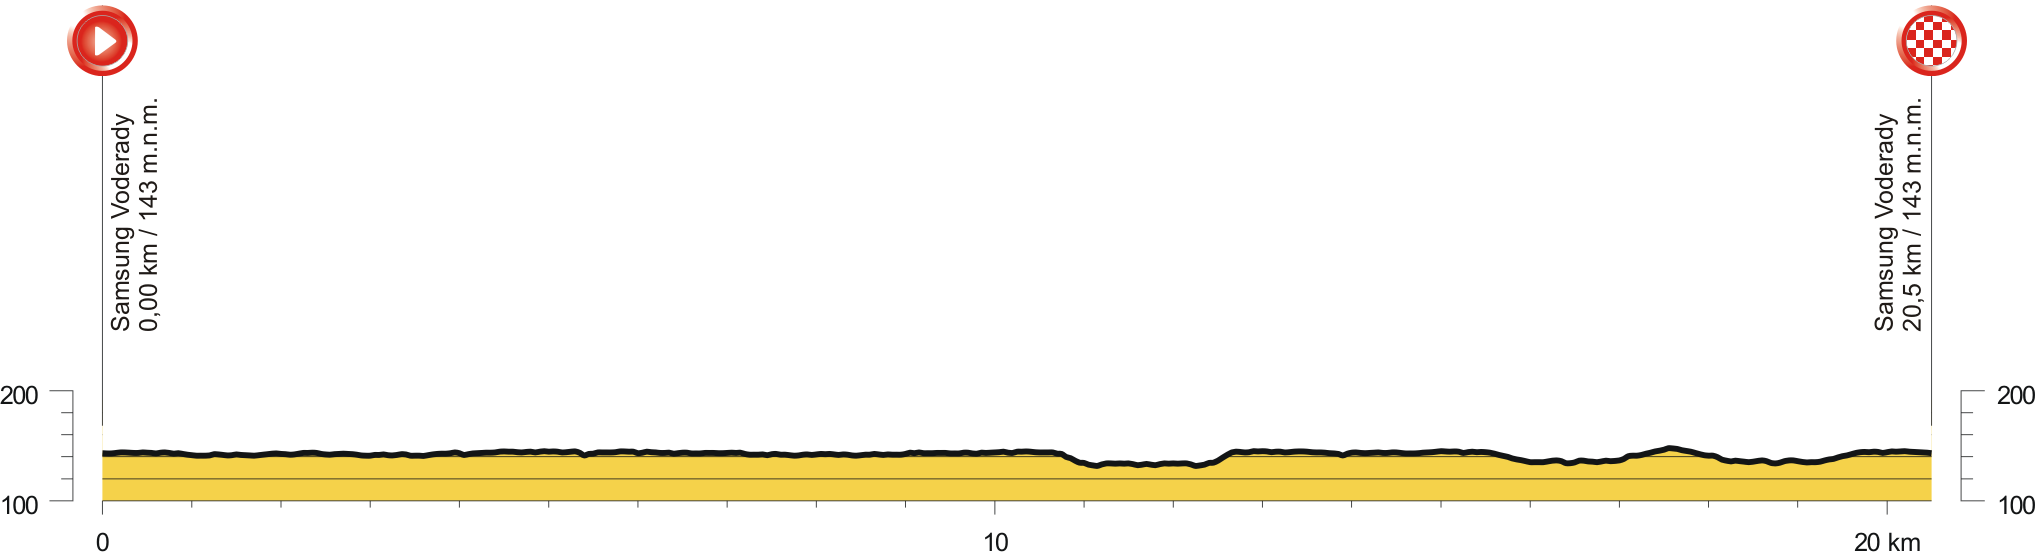 msr 19 casovka profil 20 km